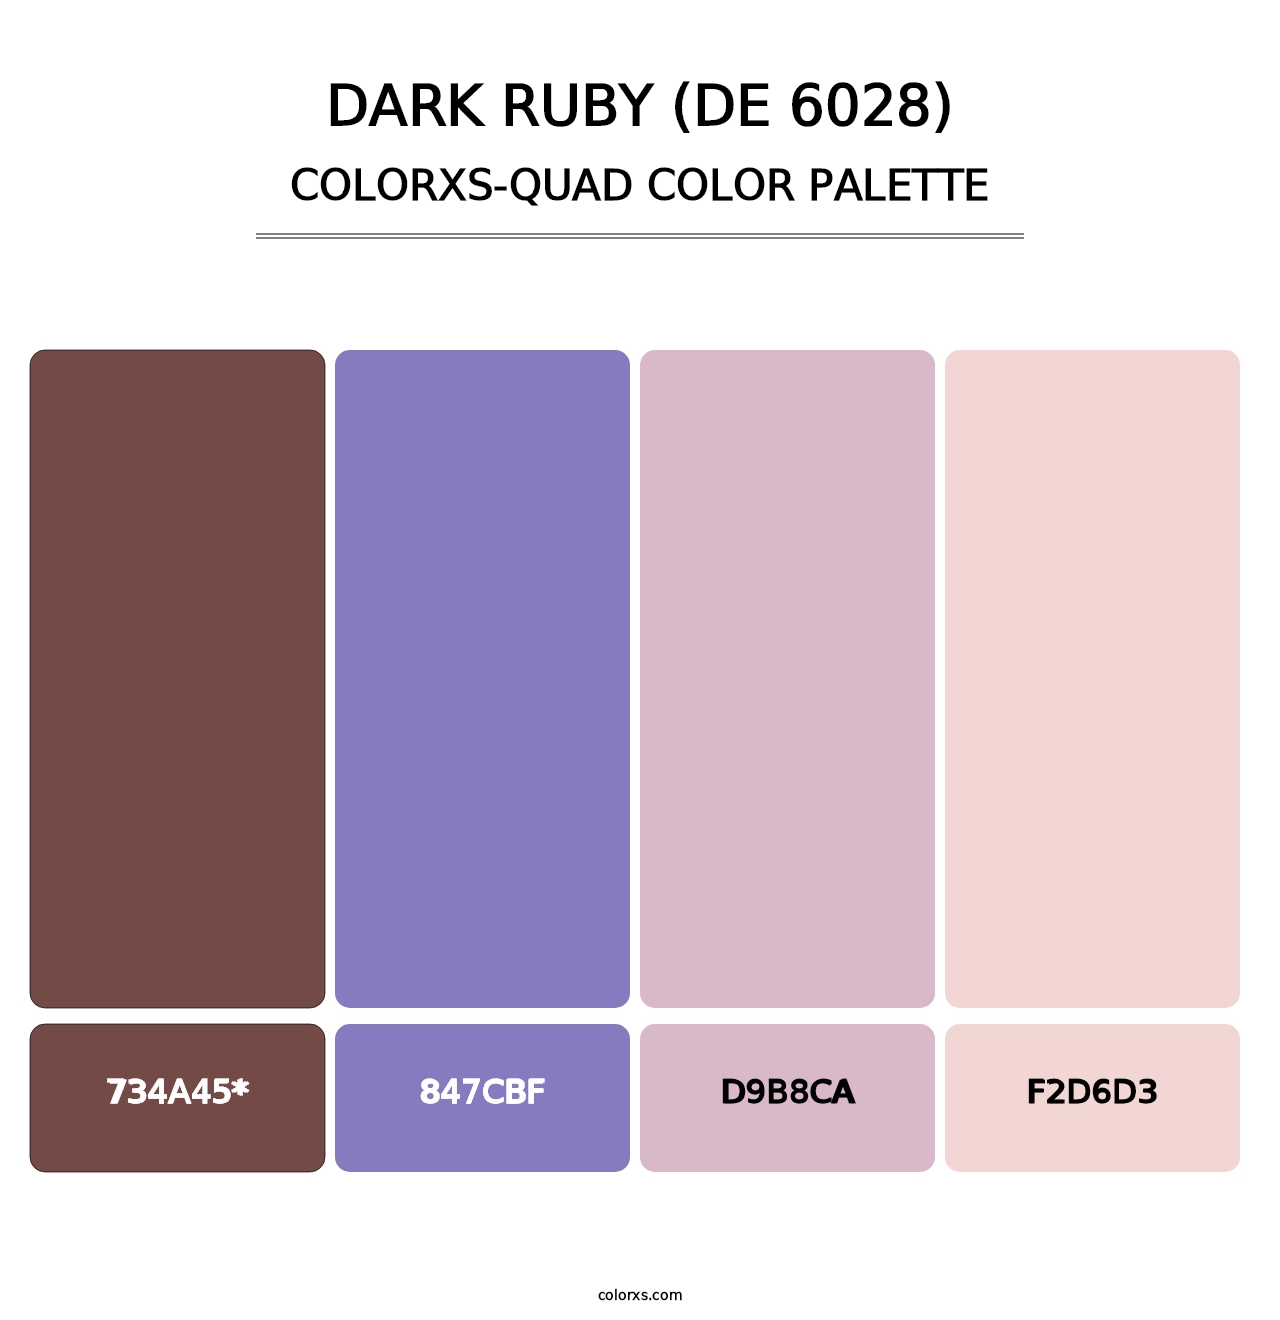 Dark Ruby (DE 6028) - Colorxs Quad Palette